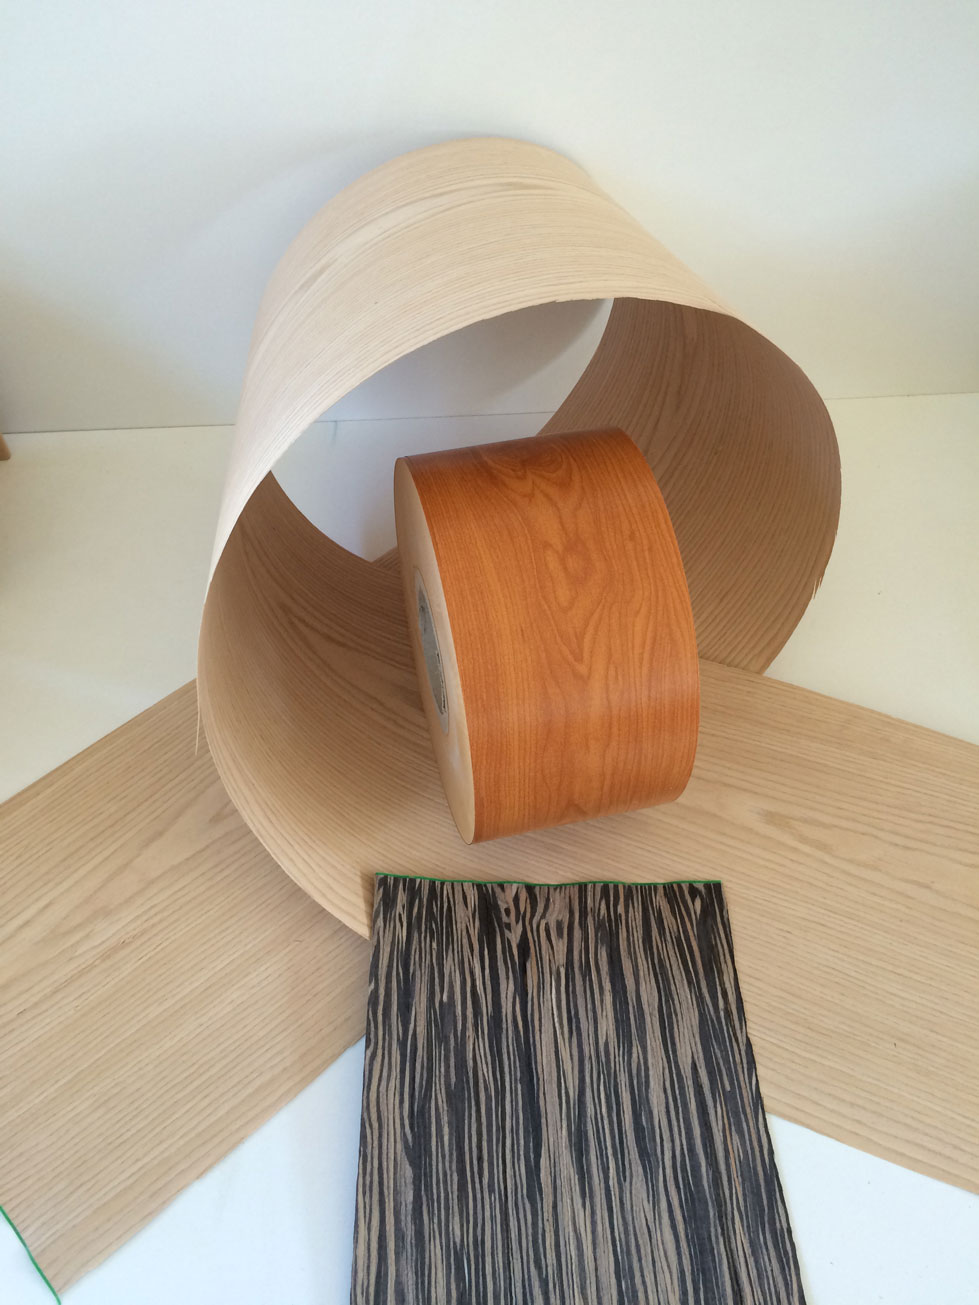 Impiallacciatura di legno e PVC per telai - IbeProfil